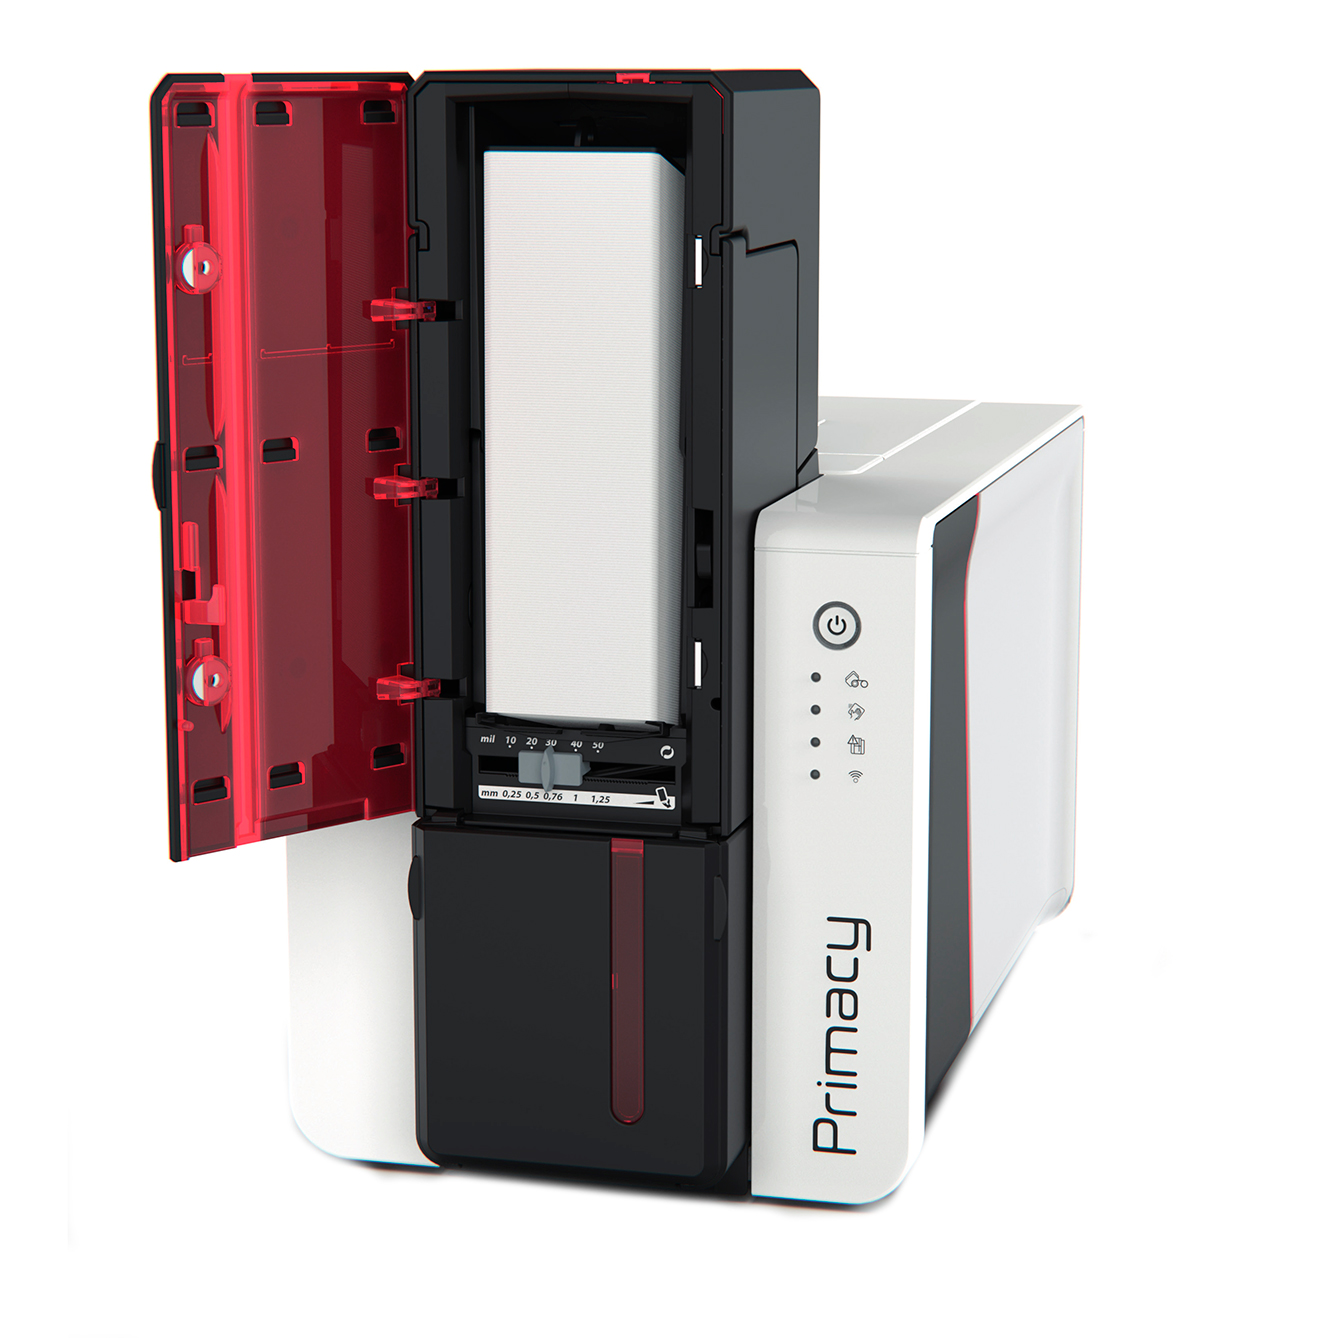 Принтер пластиковых карт Evolis Primacy 2, 300 dpi, USB, Ethernet PM2-0001-M